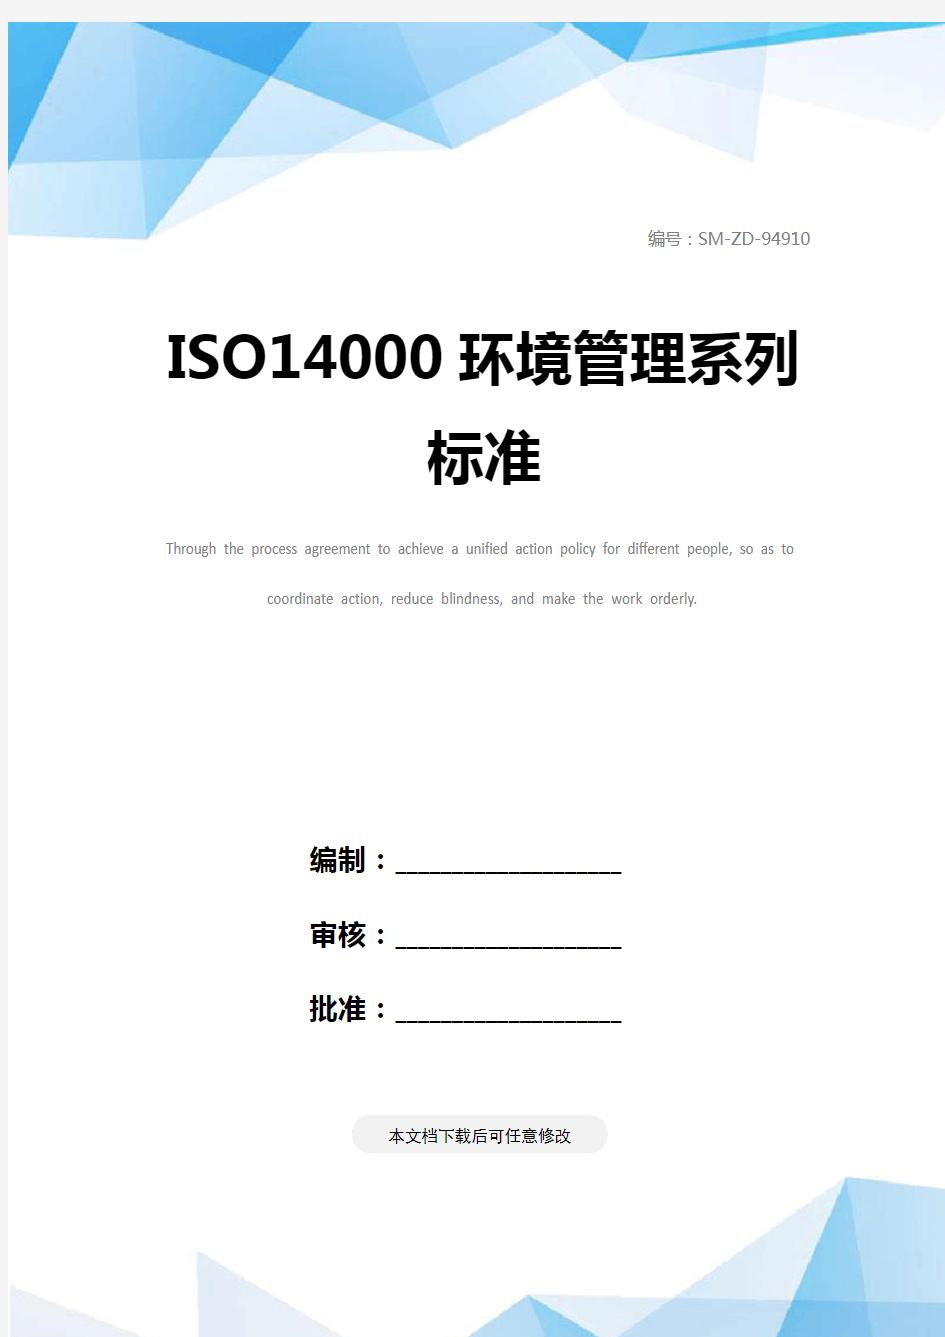 ISO14000环境管理系列标准